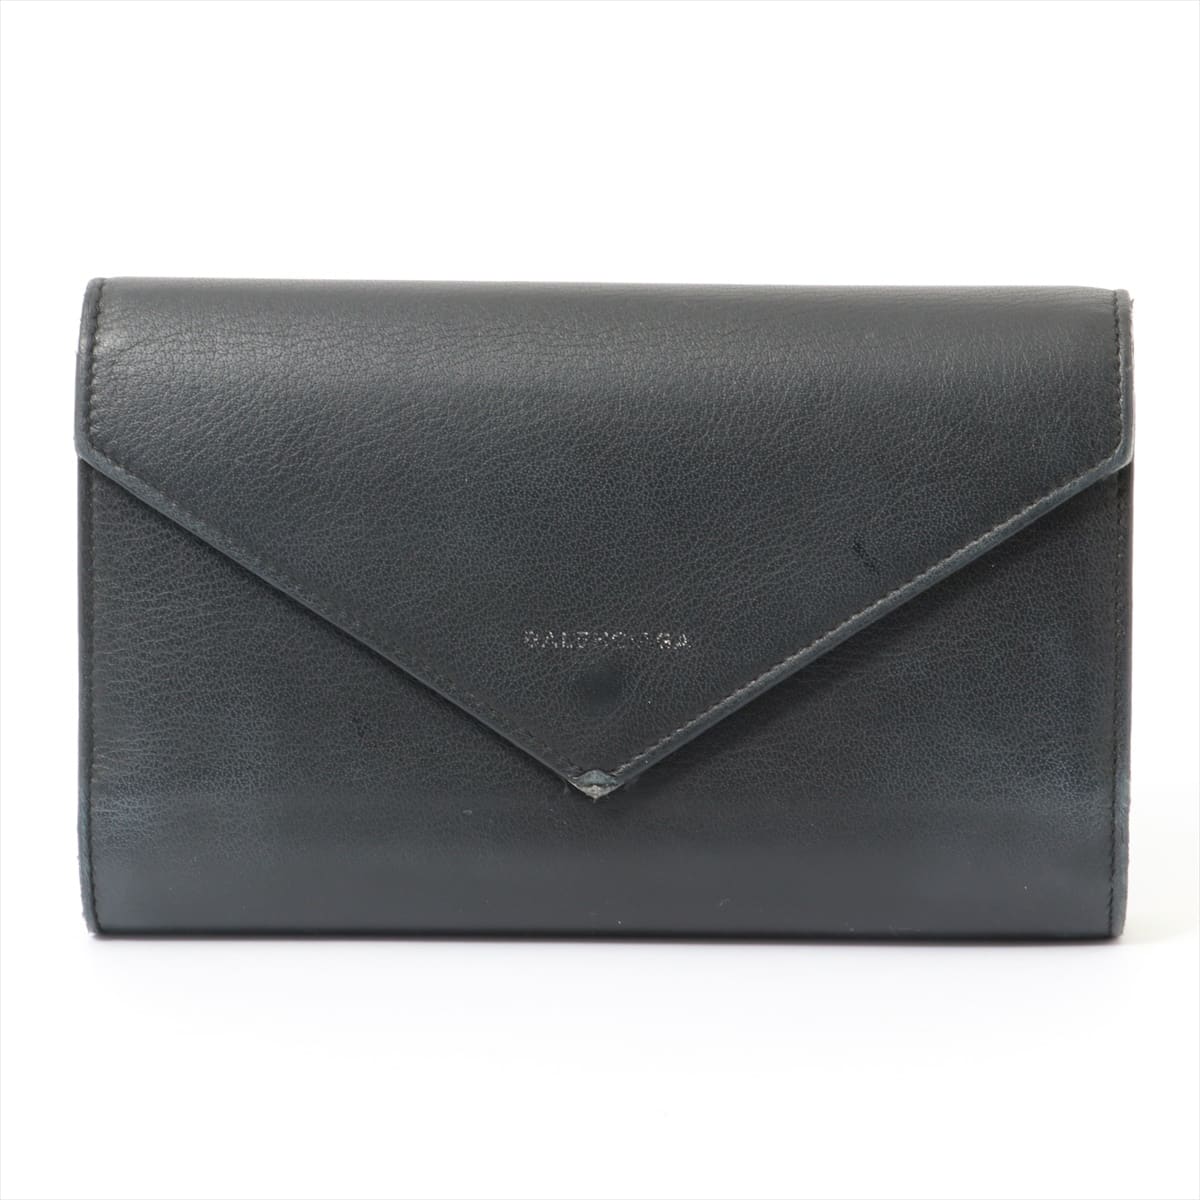 Balenciaga Papier 371661 Leather Wallet Black